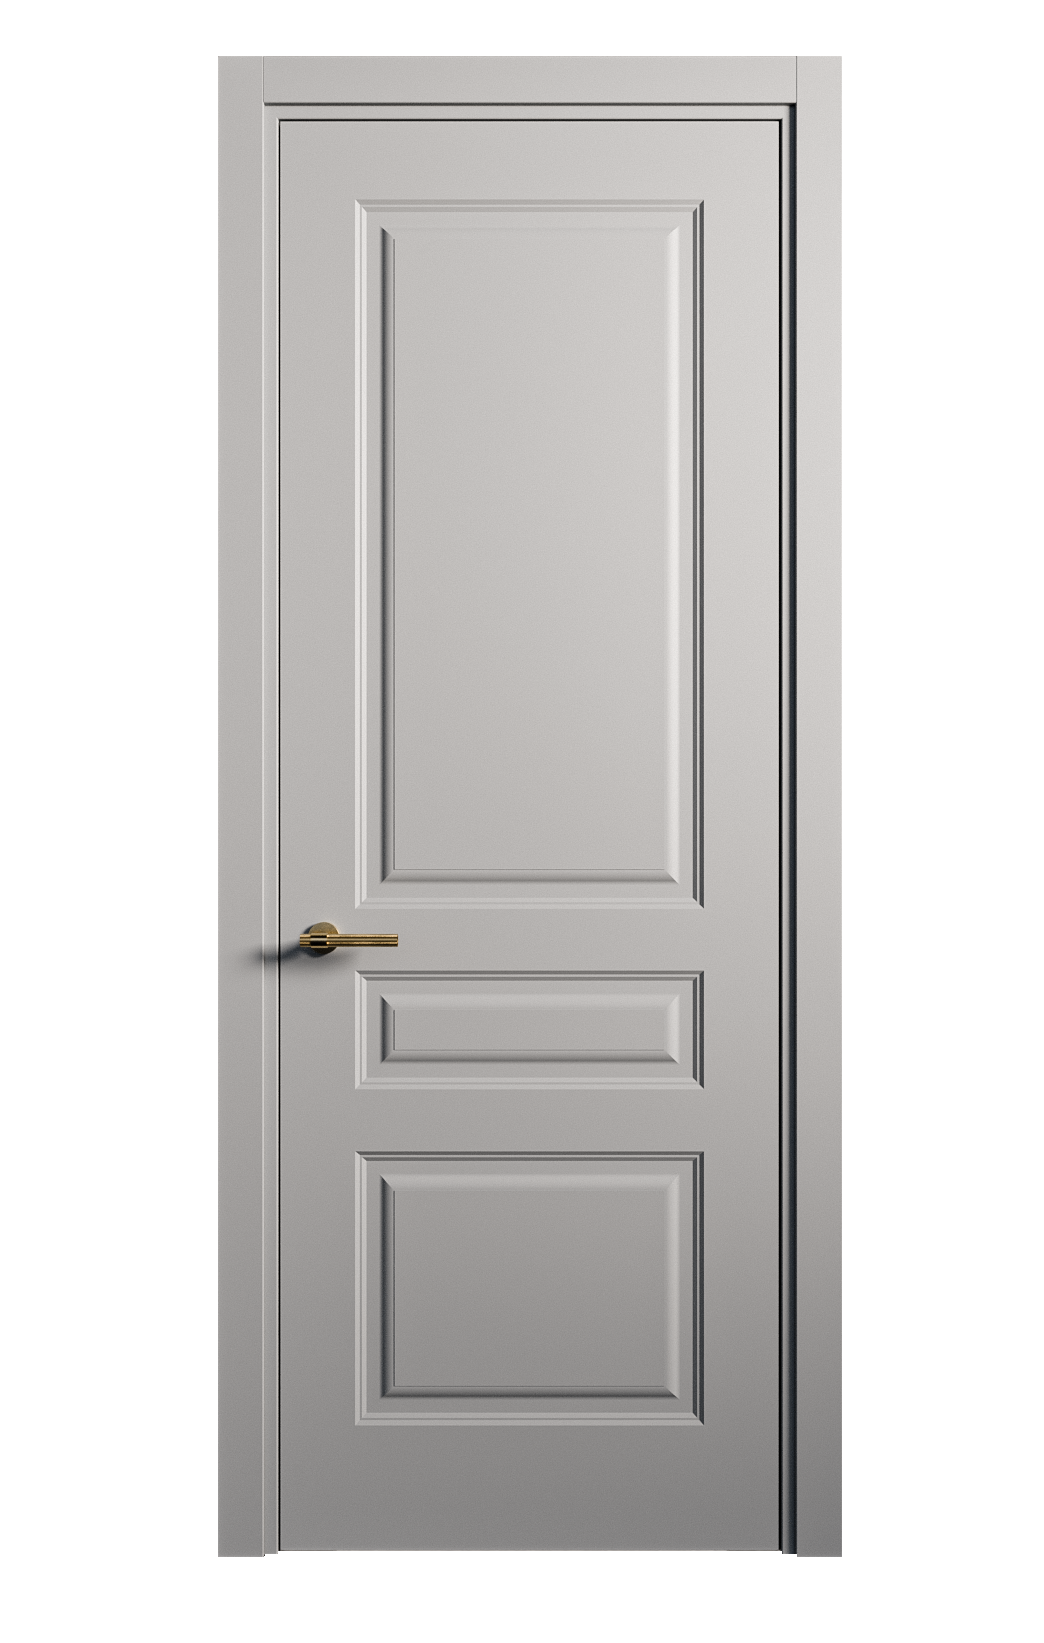 Межкомнатная дверь Вита-2 глухая эмаль ral 7040 26357